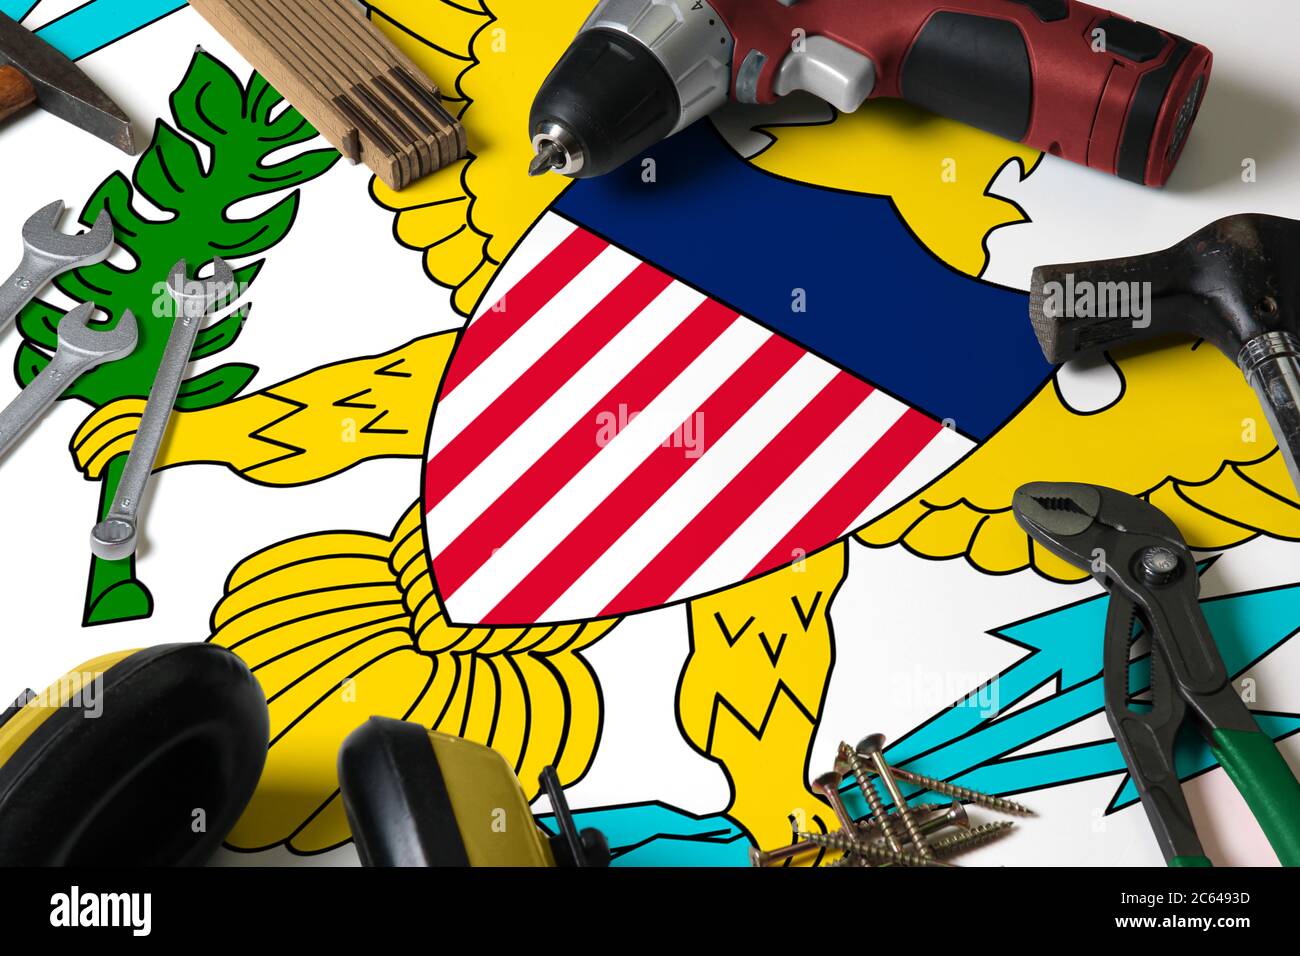 United States Virgin Islands Flagge auf Reparatur-Tool Konzept Holztisch Hintergrund. Mechanisches Service-Thema mit nationalen Objekten. Stockfoto